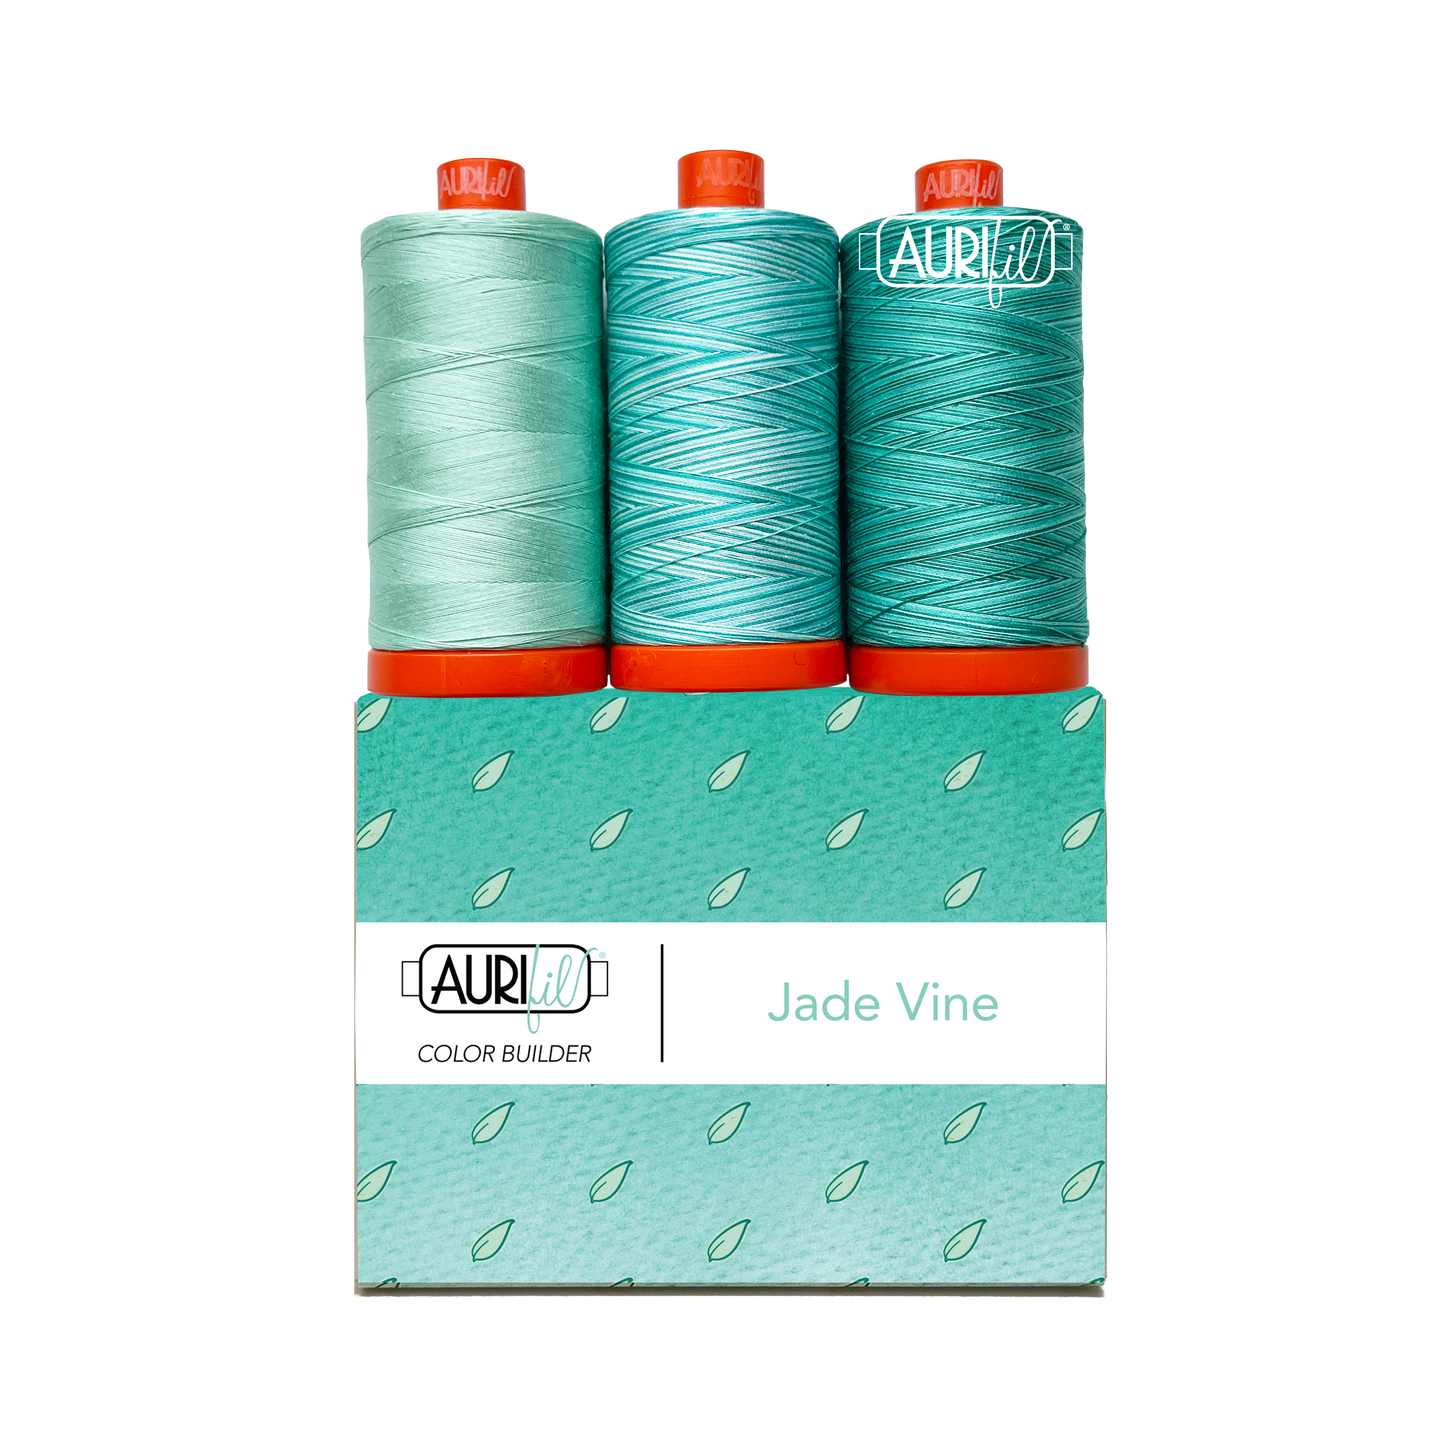 Aurifil Color Builders "Flora"- Août 2022 - Jade Vine - Licence To Quilt